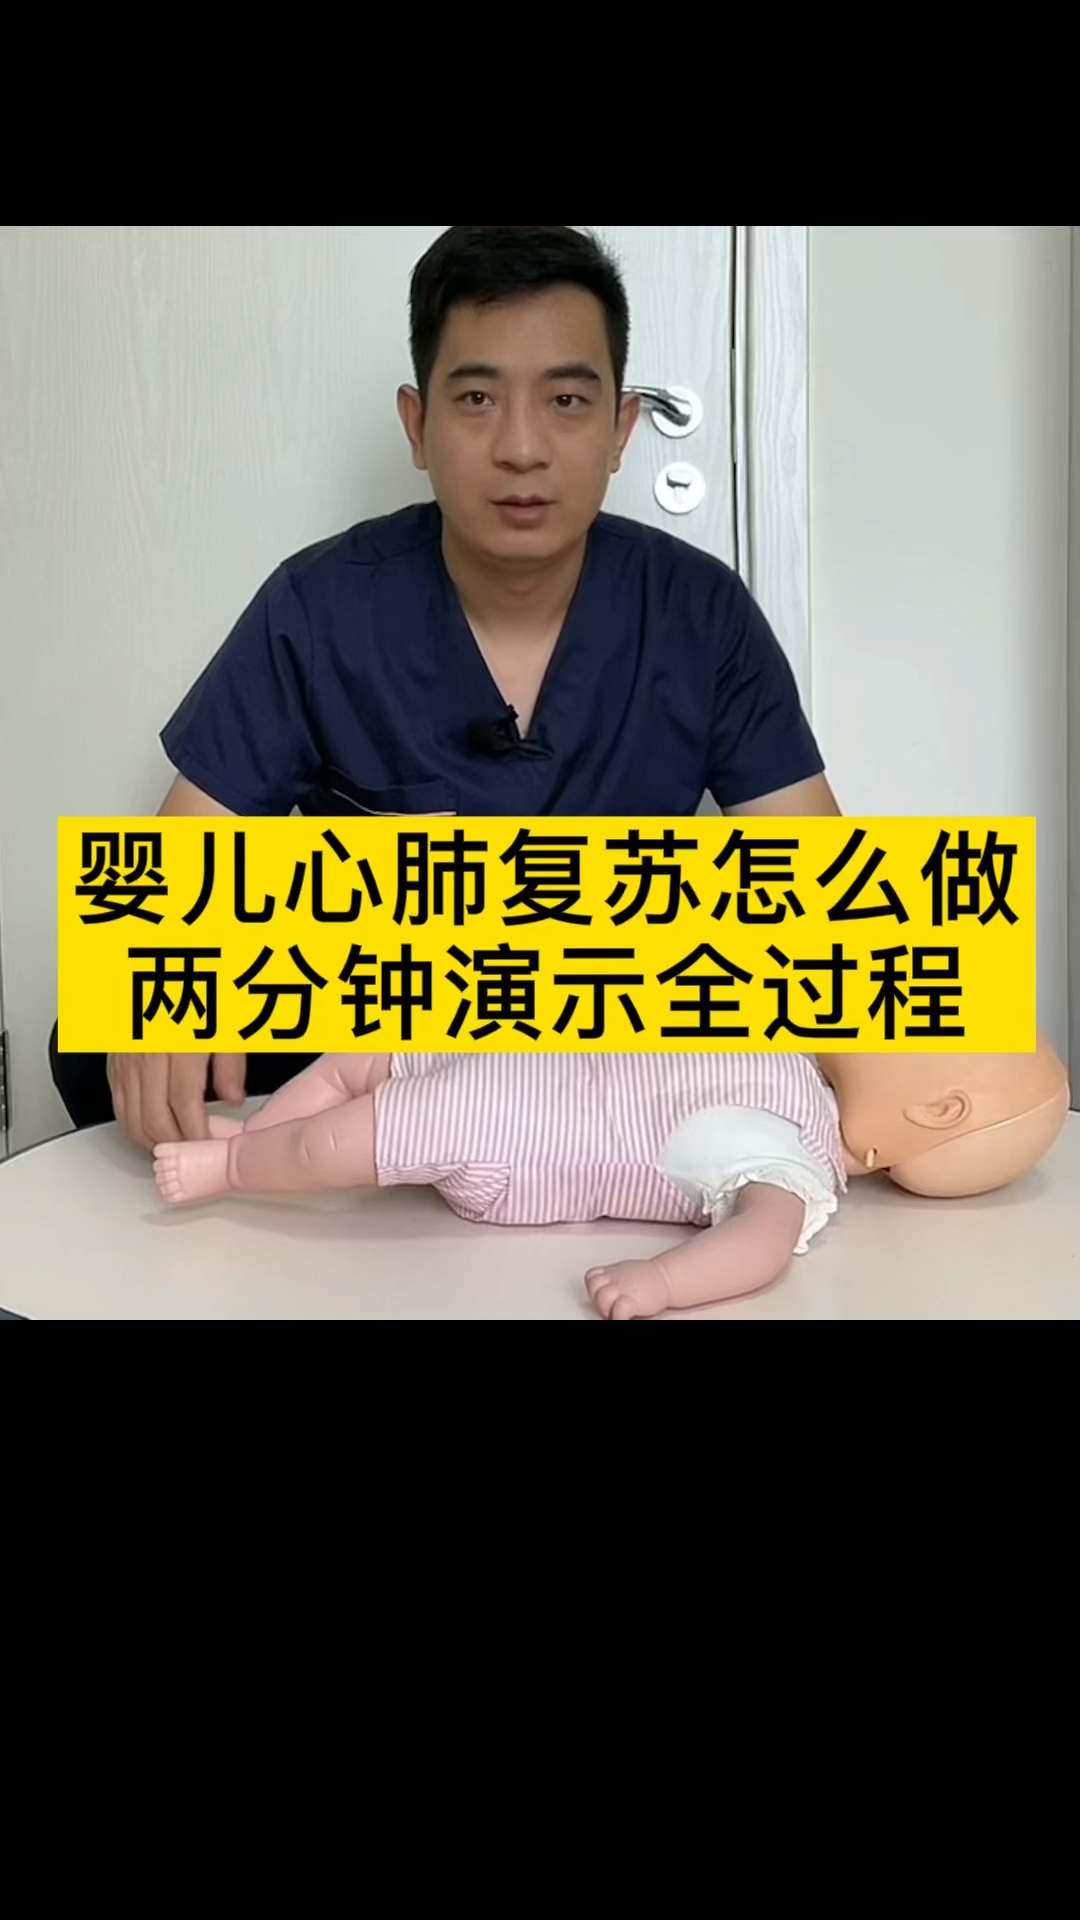 急救婴儿的心肺复苏怎么做两分钟的视频演示清楚